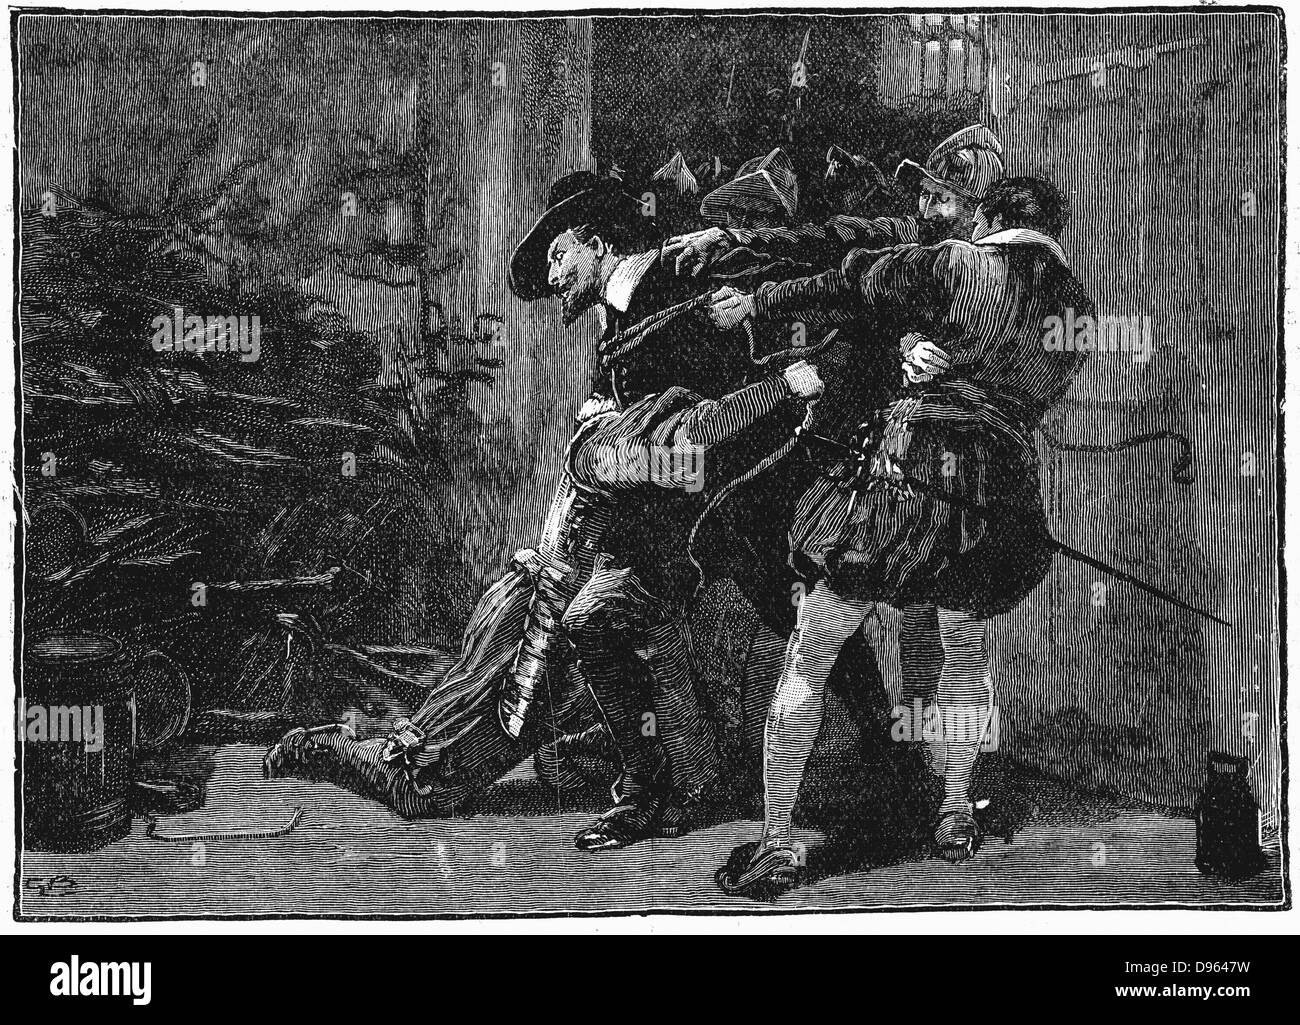 Gunpowder Plot, Römisch-katholischen Verschwörung bis zu Englischen Häusern des Parlaments am 5. November 1605 Schlag, als James I durch neue Sitzung zu öffnen. Festnahme von Guy Fawkes in den Kellern des Parlaments. 19. jahrhundert Holzstich. Stockfoto